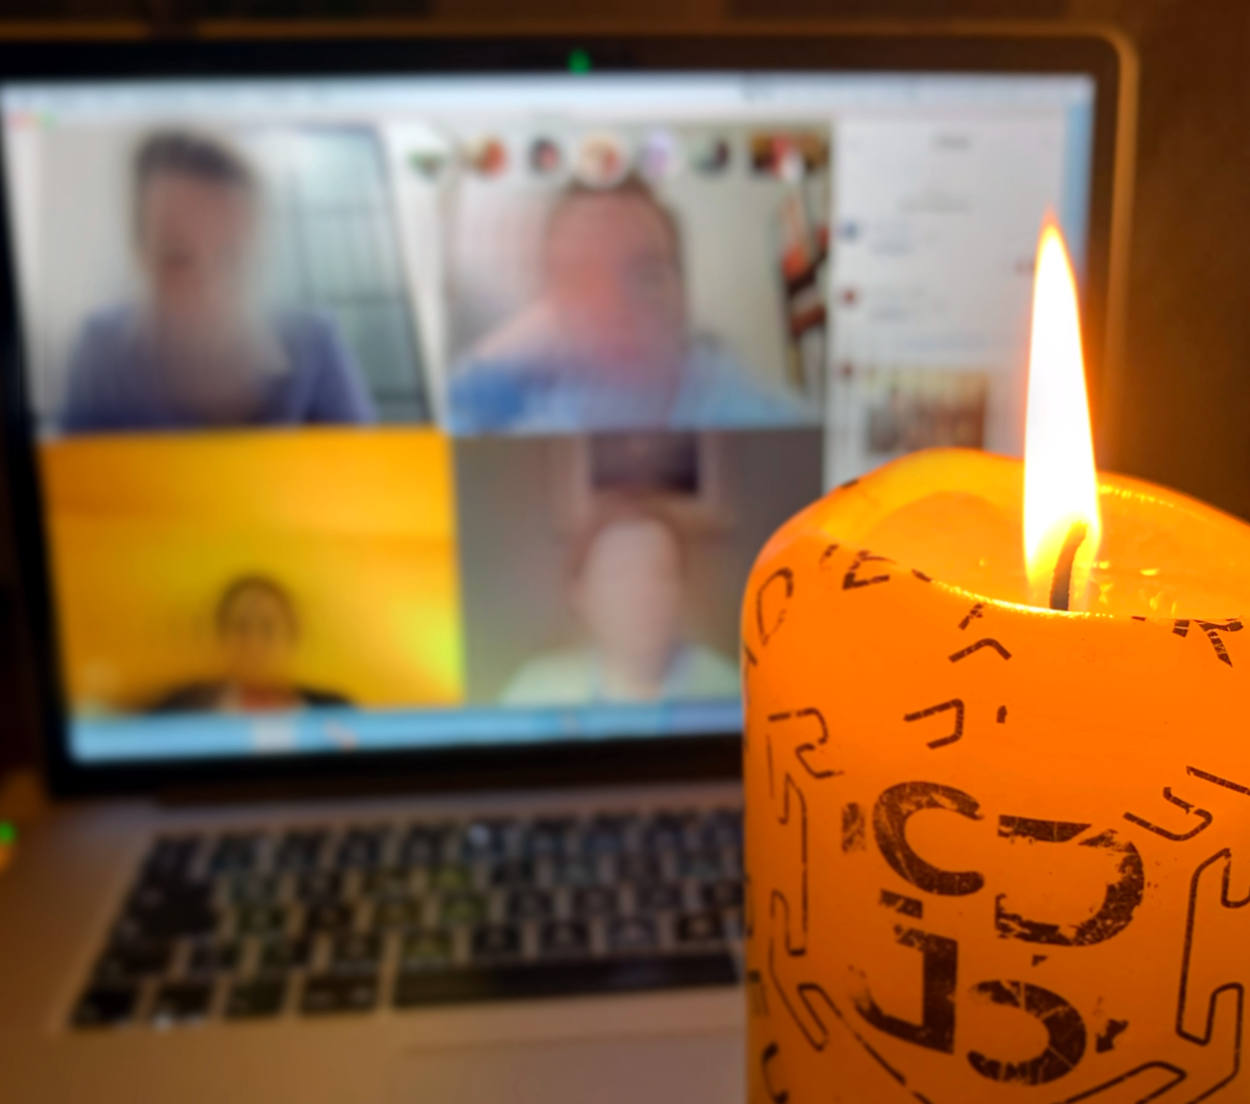 Im Vordergrund eine brennende Kerze, im Hintergrund eine Webkonferenz, unscharf